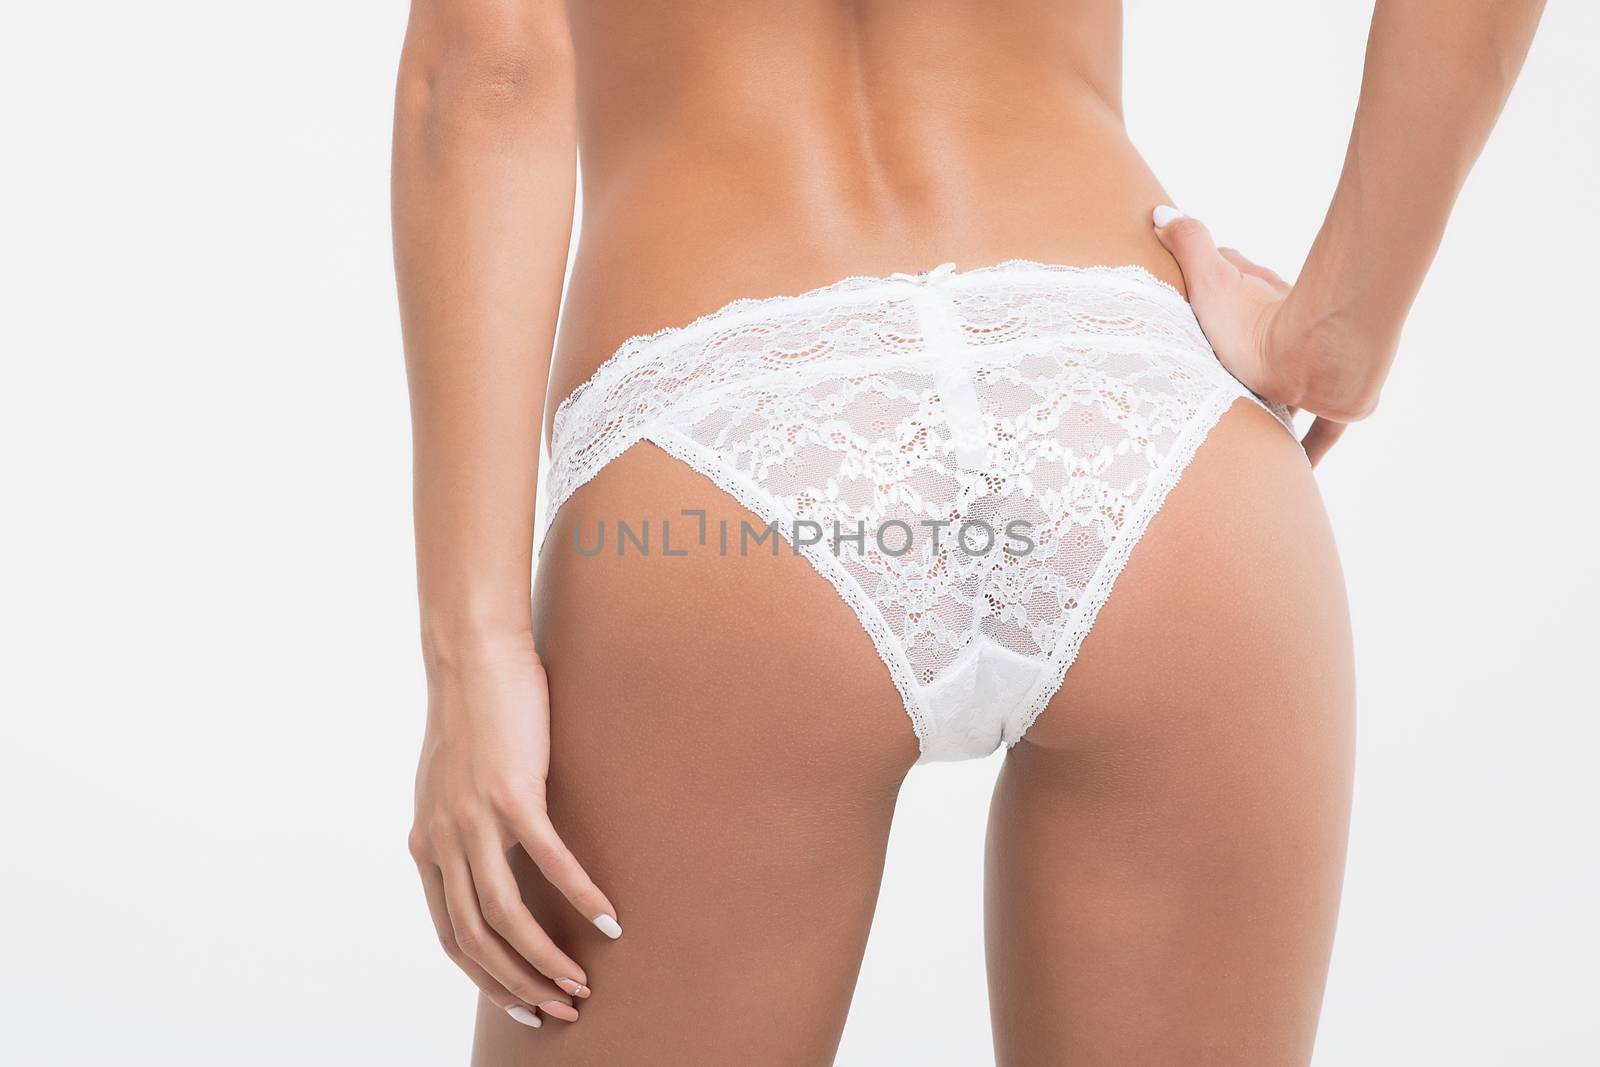 Girl in lingerie on white background by 3KStudio